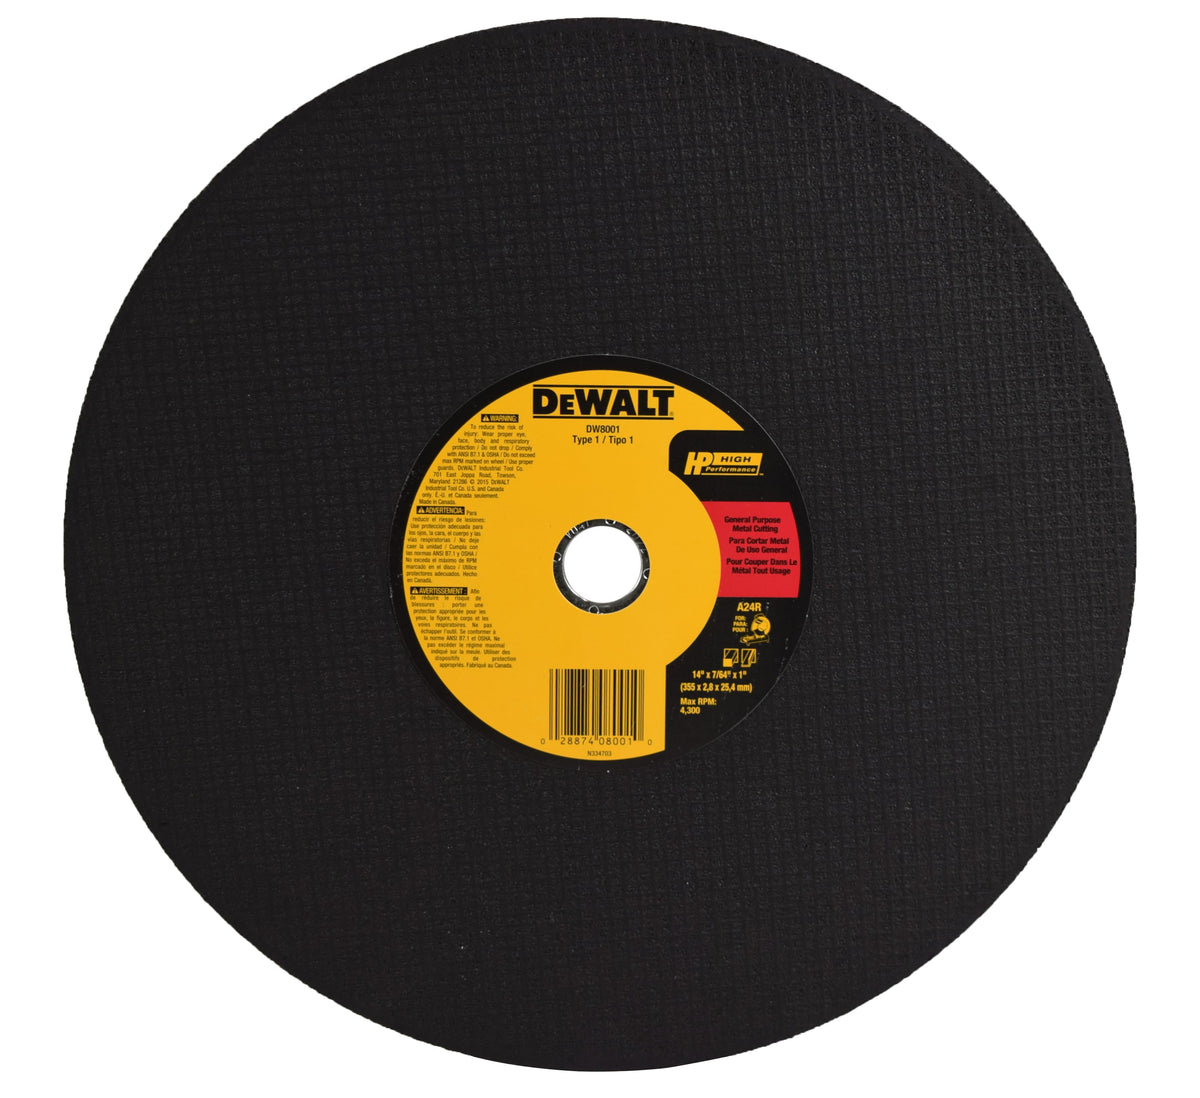 DEWALT DW8001 General Purpose Chop Saw Wheel, 14-Inch X 7/64-Inch X 1-Inch 10 Pack